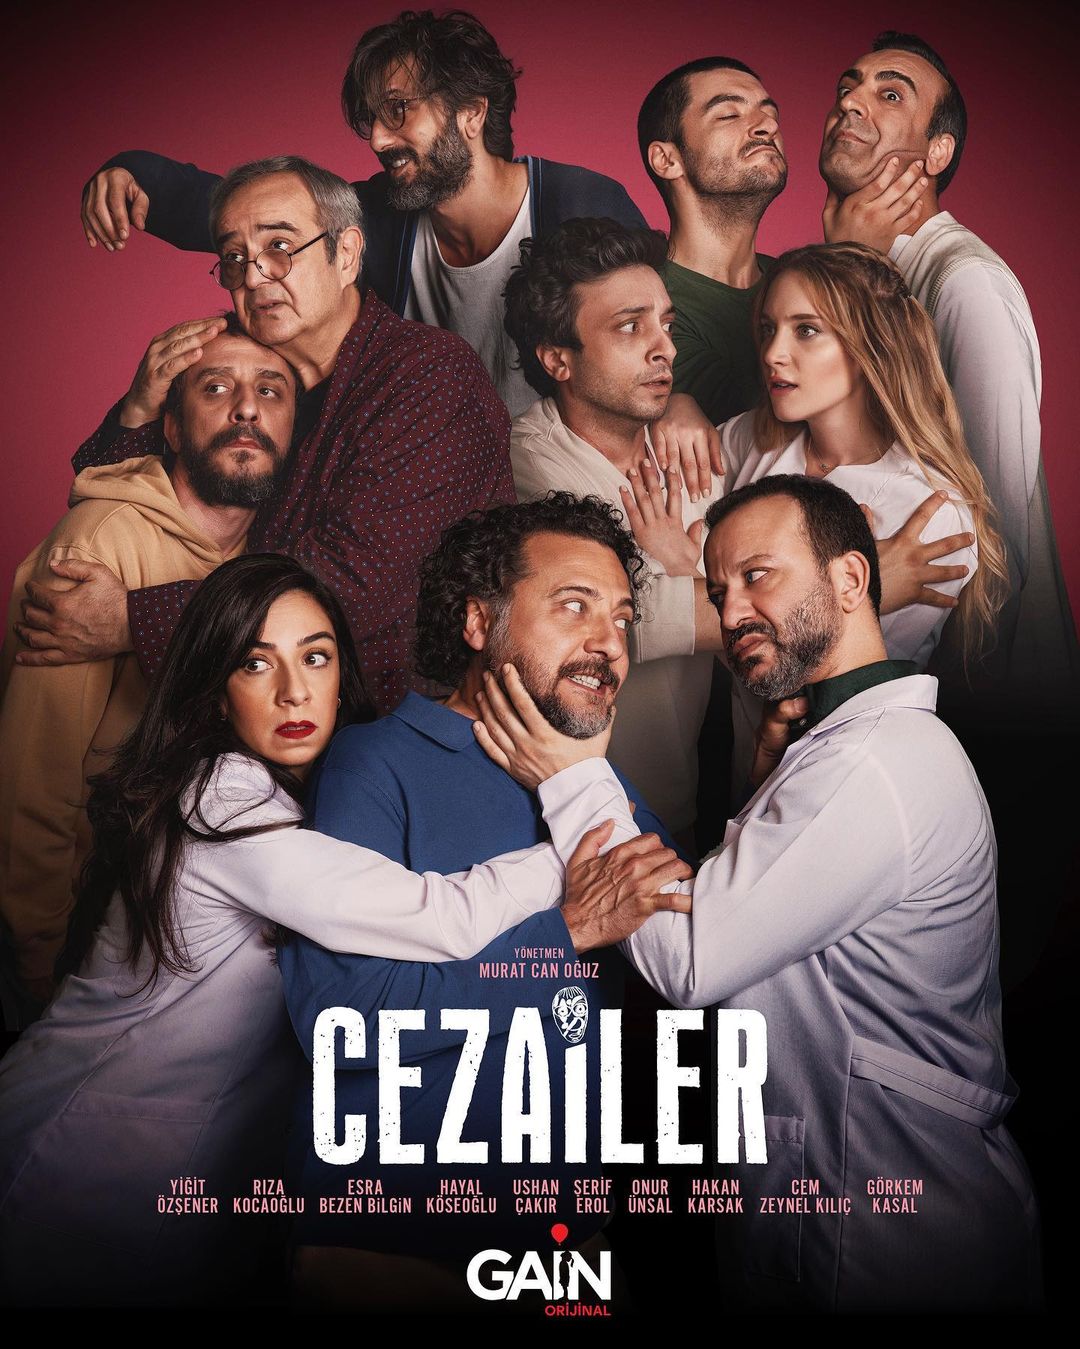 TV ratings for Cezailer in Turkey. Gain TV series